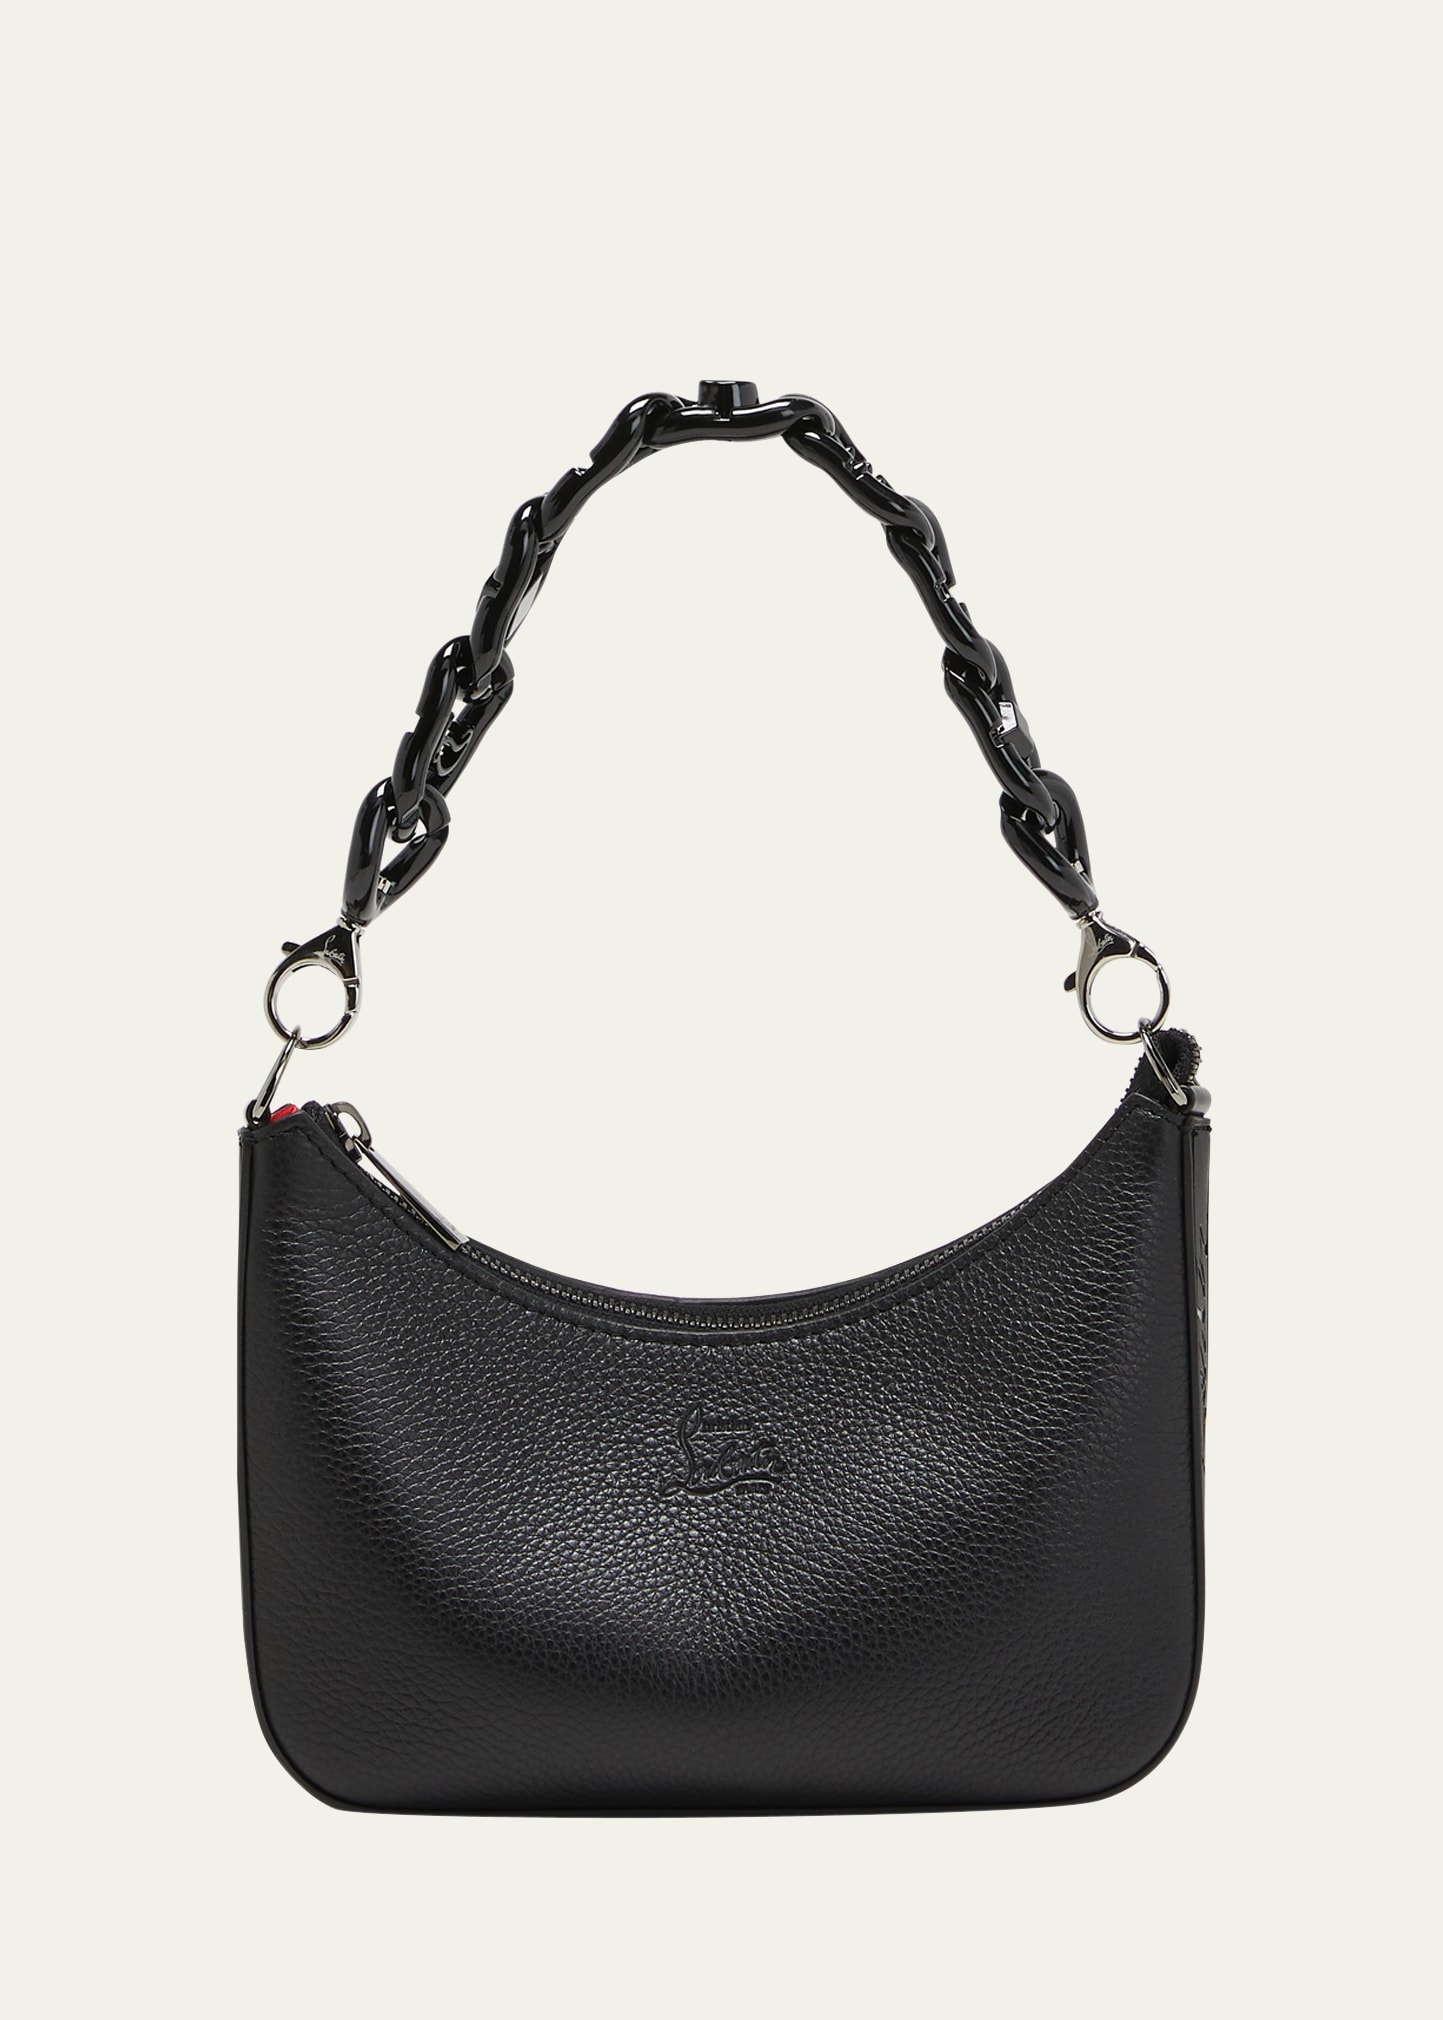 Loubila Chain Mini Shoulder Bag in Leather